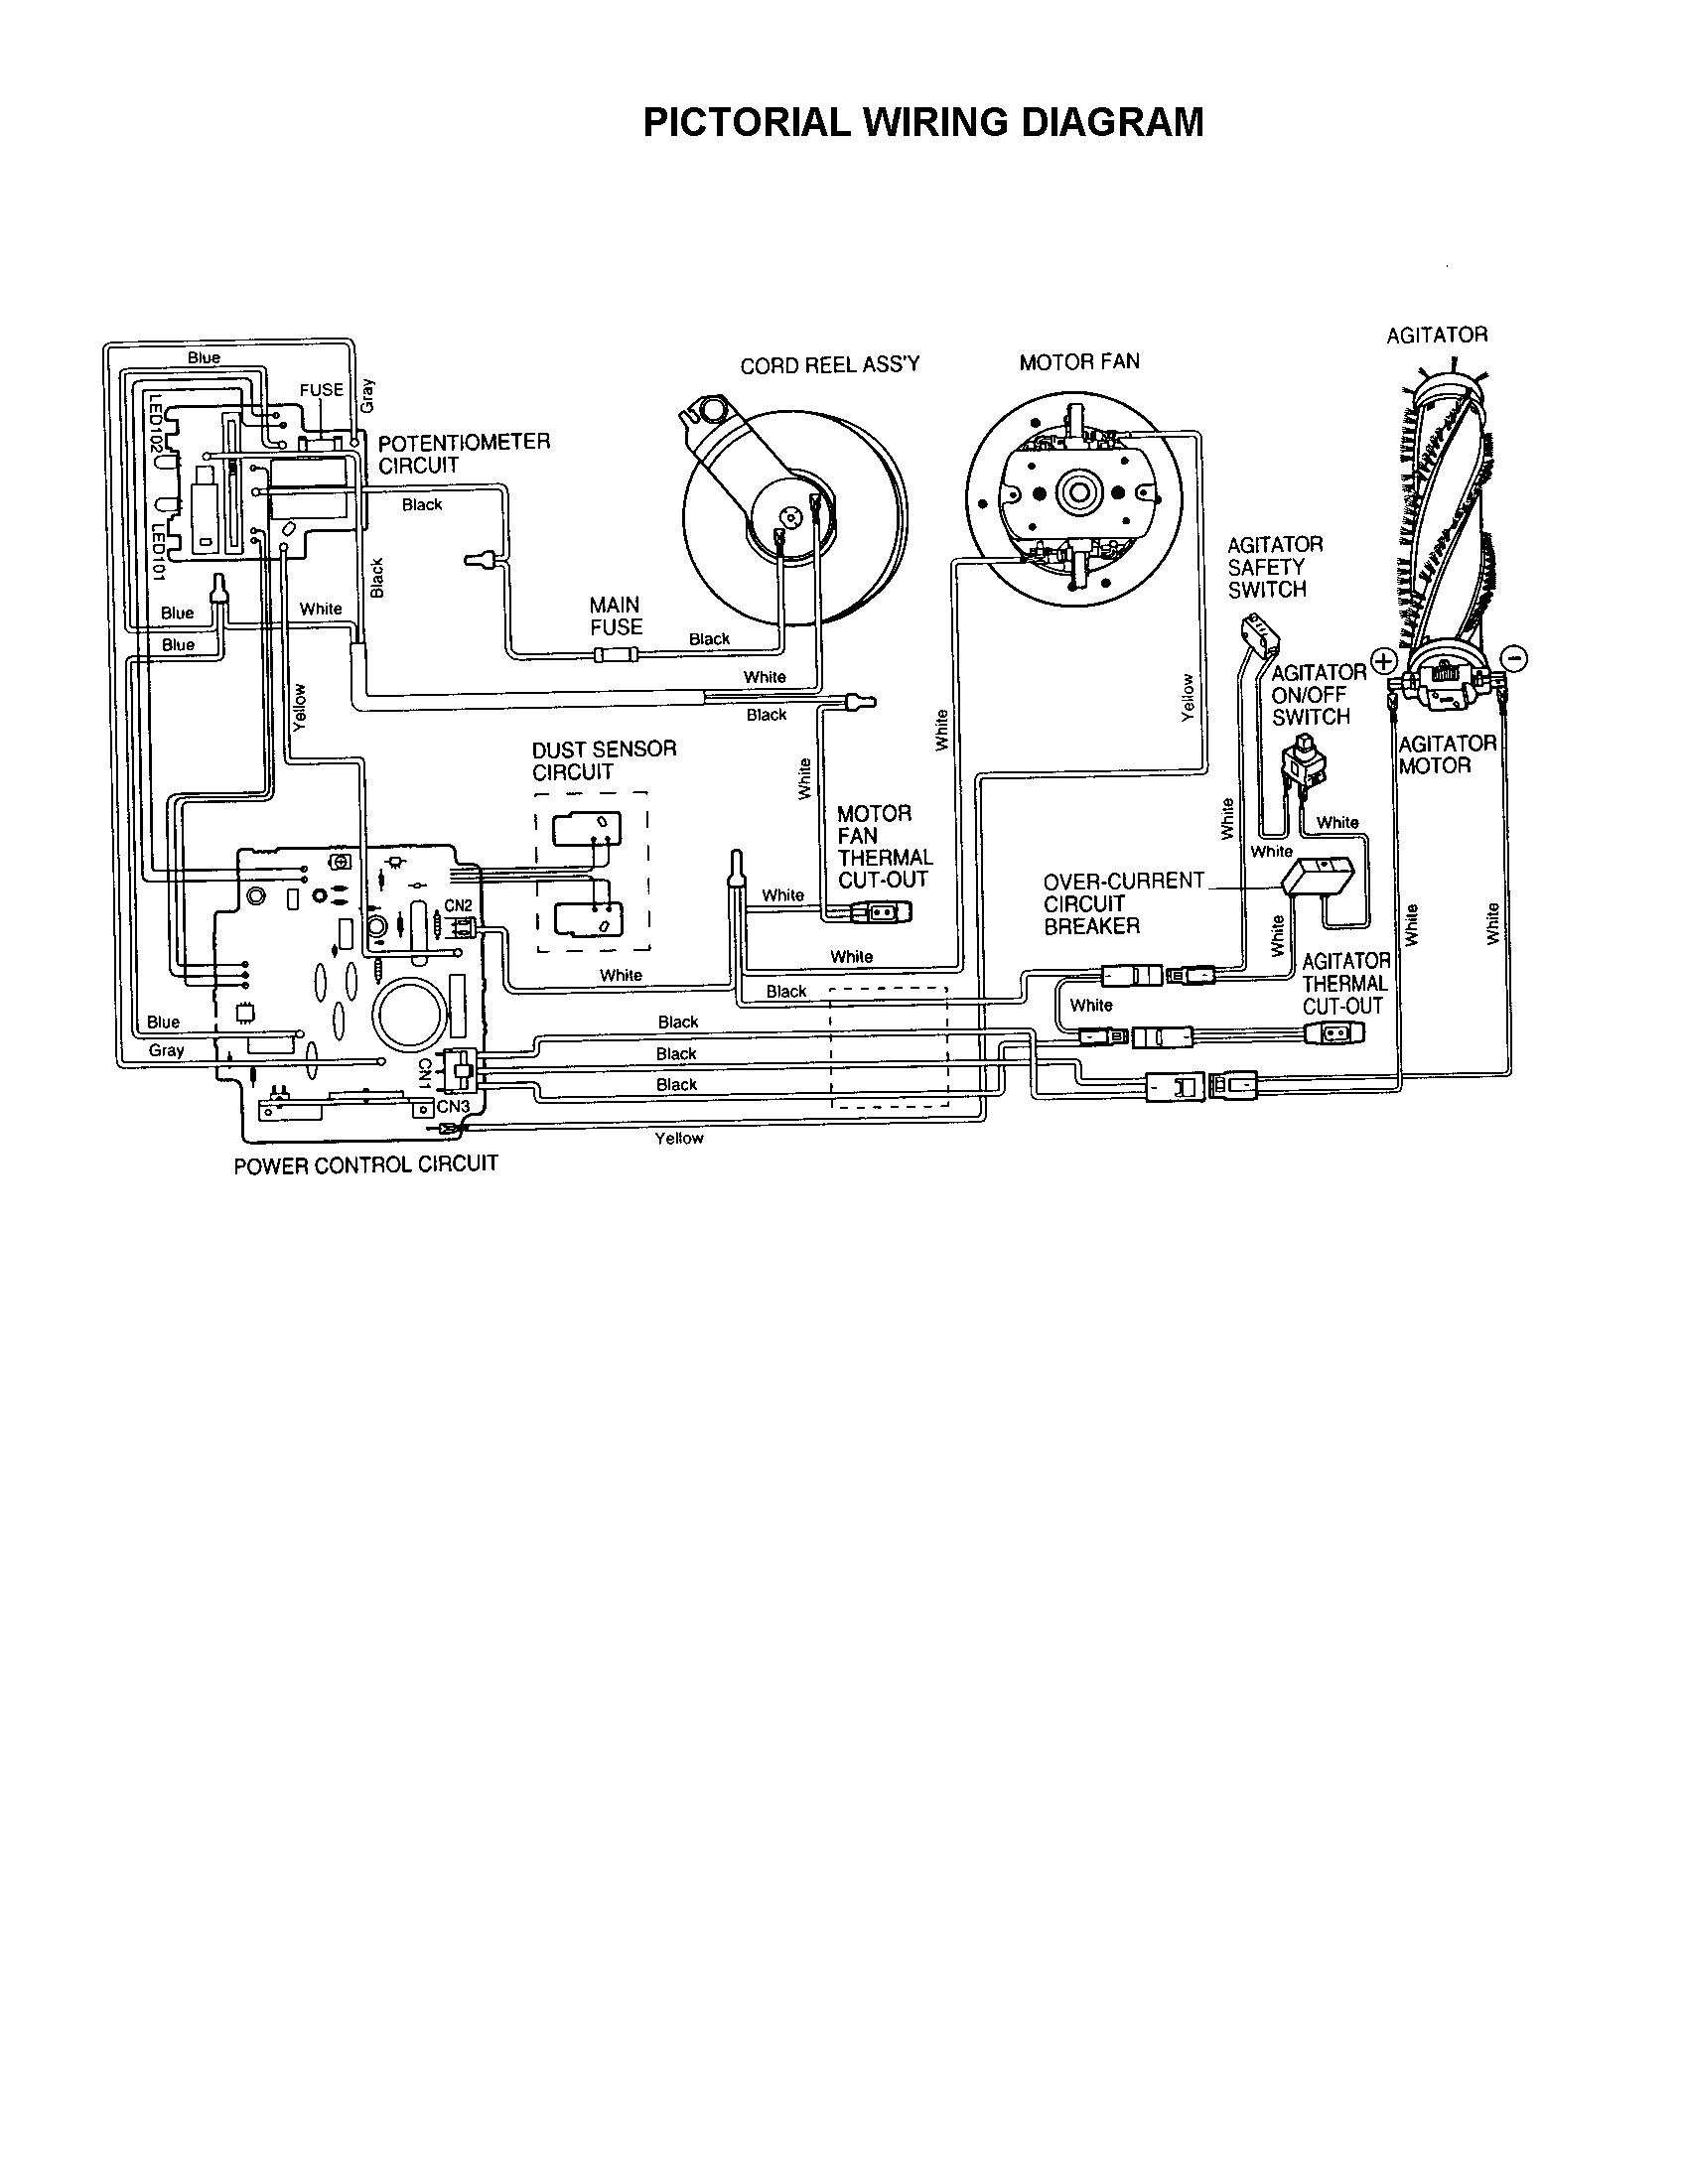 sears vacuum cleaner wiring diagram wiring diagram valsears vacuum cleaner wiring wiring diagram name kenmore vacuum